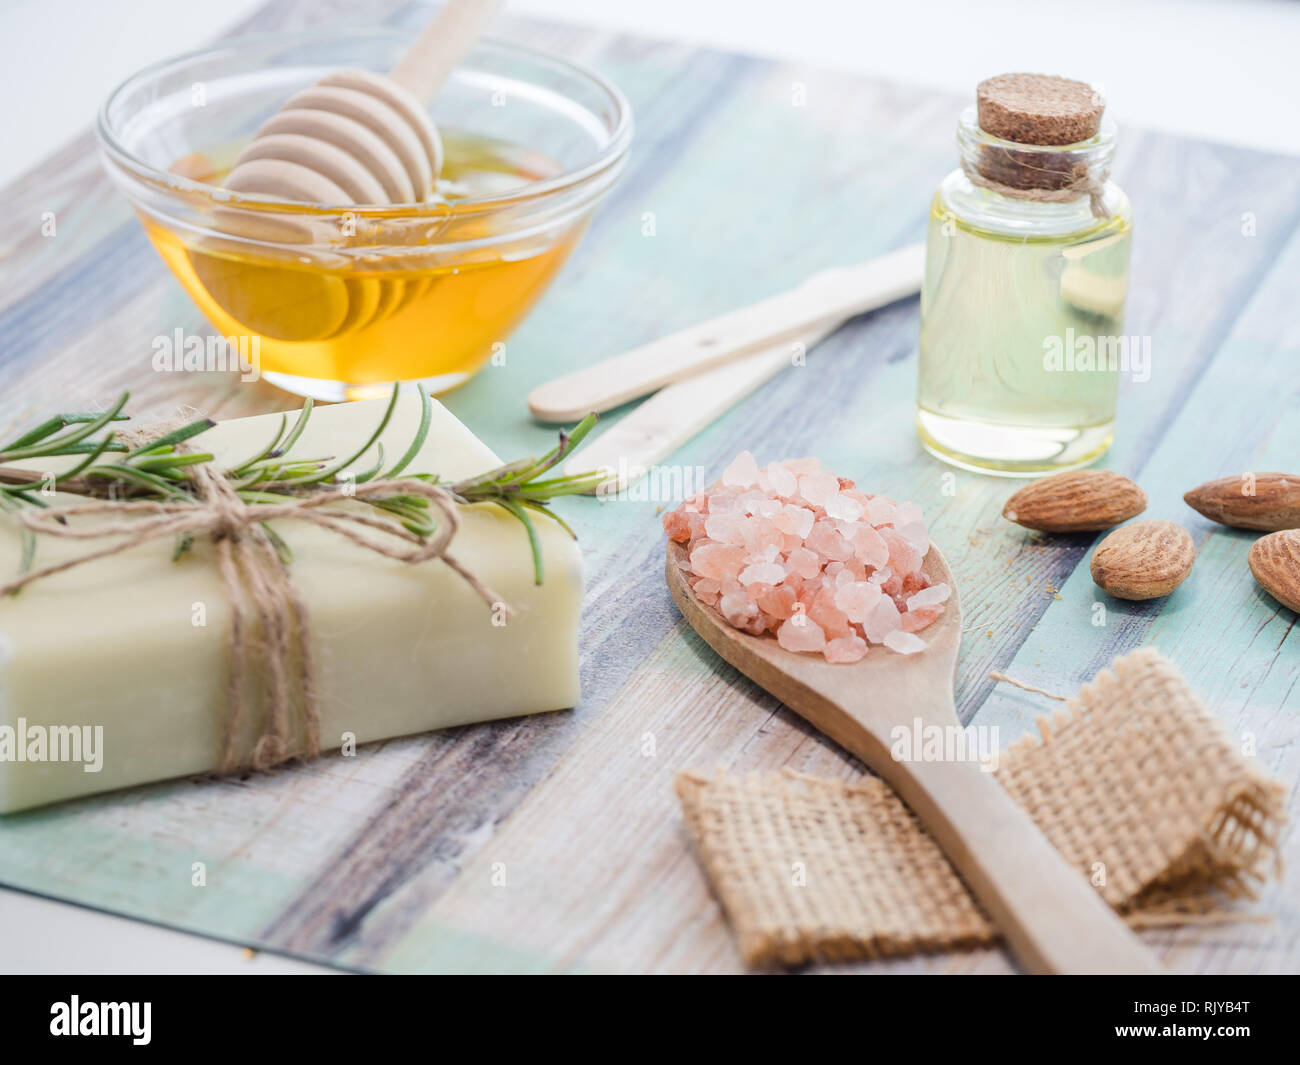 Hautpflege natürliche Produkte Zutaten für scrub Body Mask: Mandelöl, Honig,  natürliche Seife, Himalaya Salz Stockfotografie - Alamy